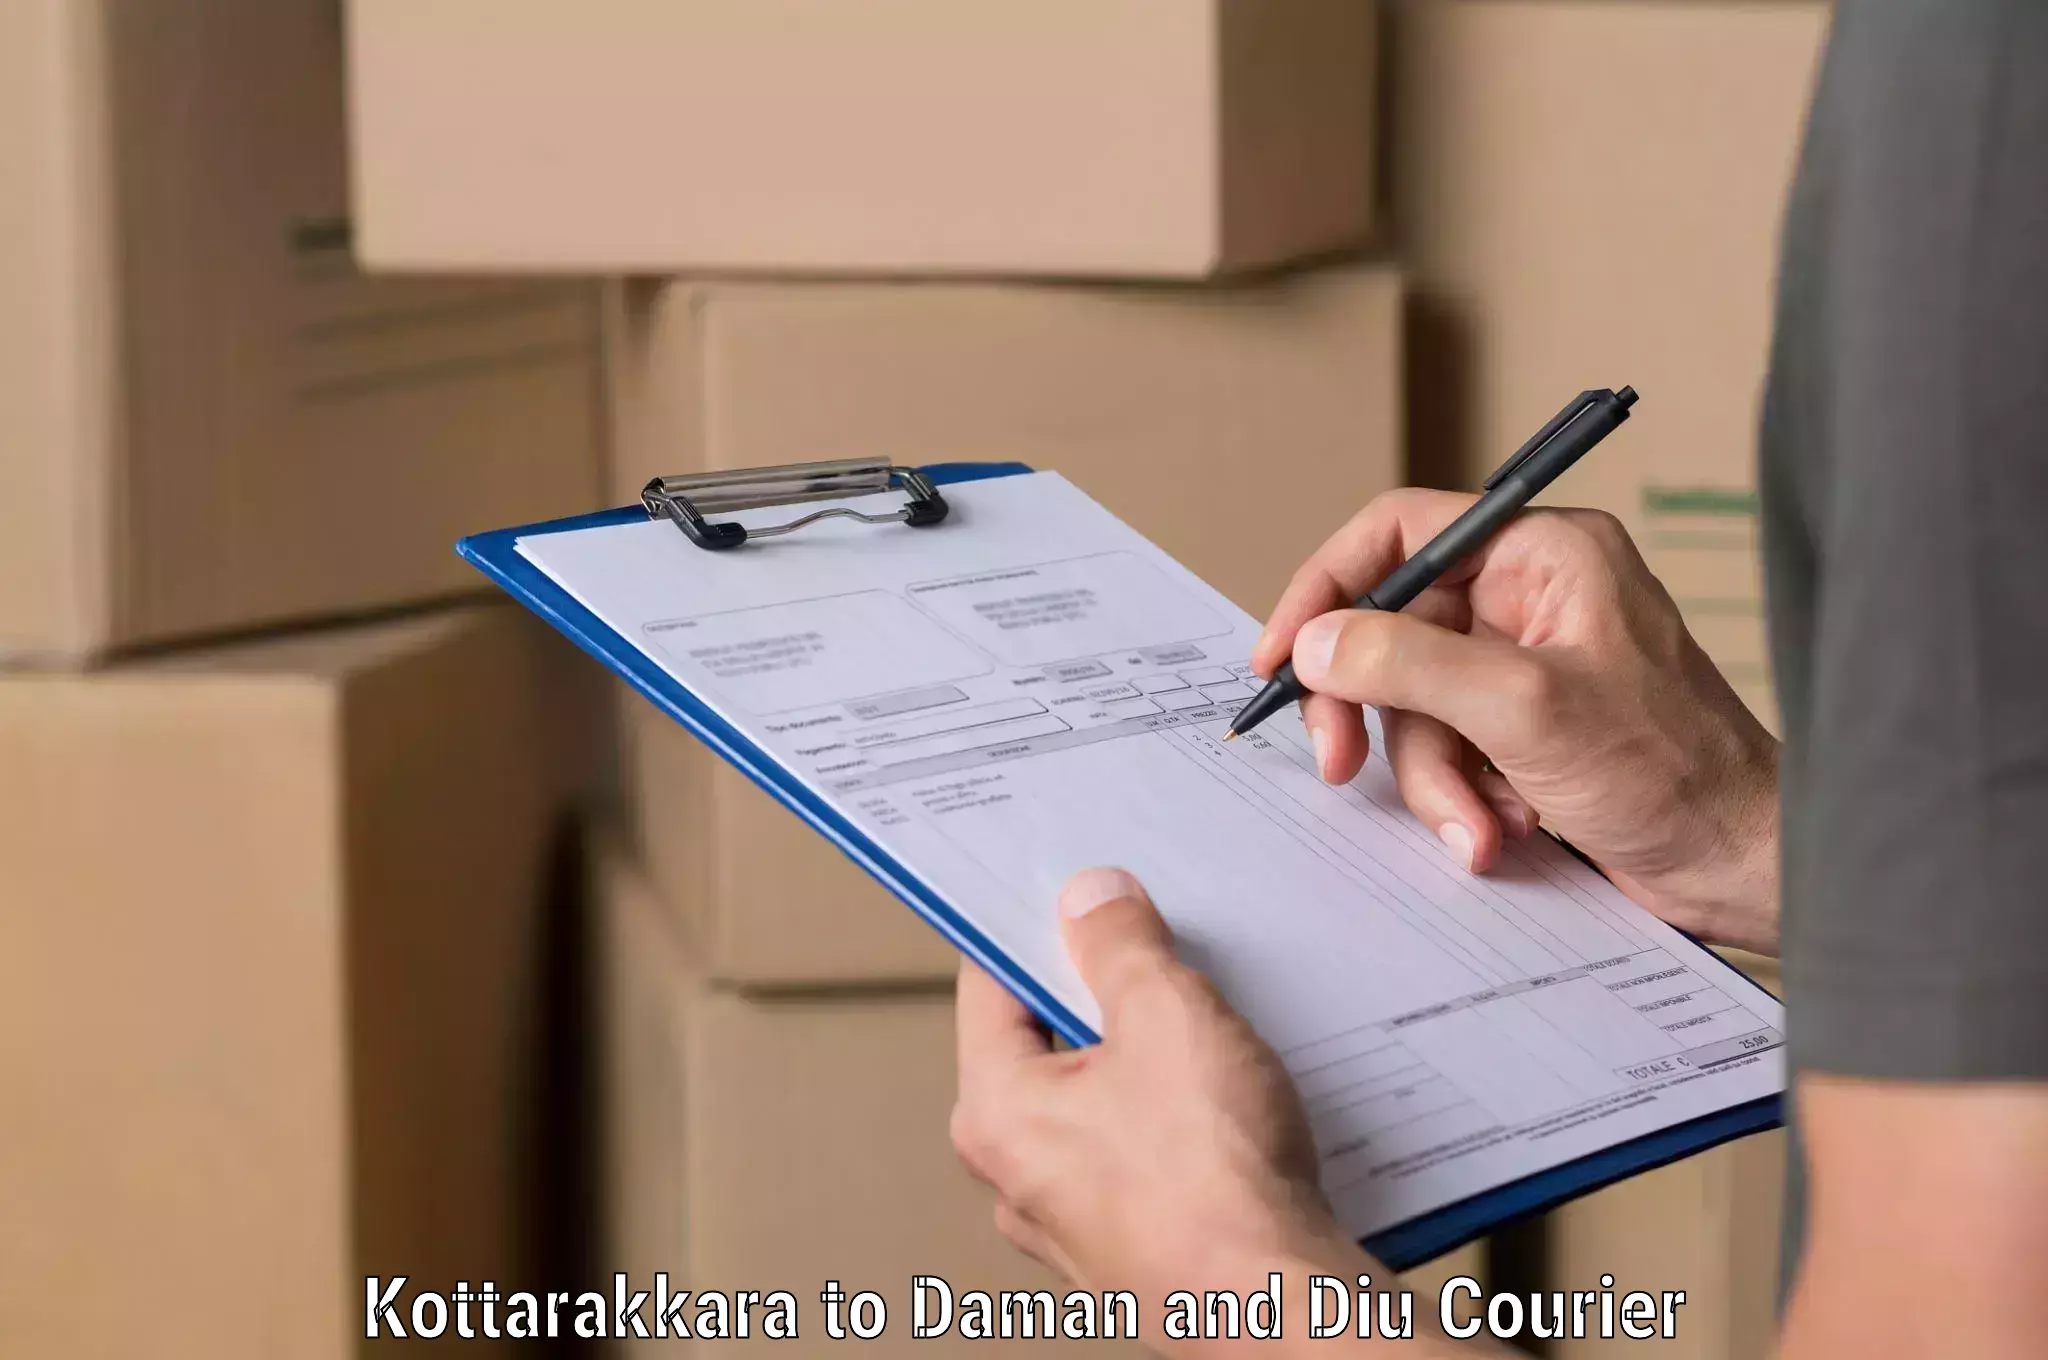 Easy access courier services Kottarakkara to Diu